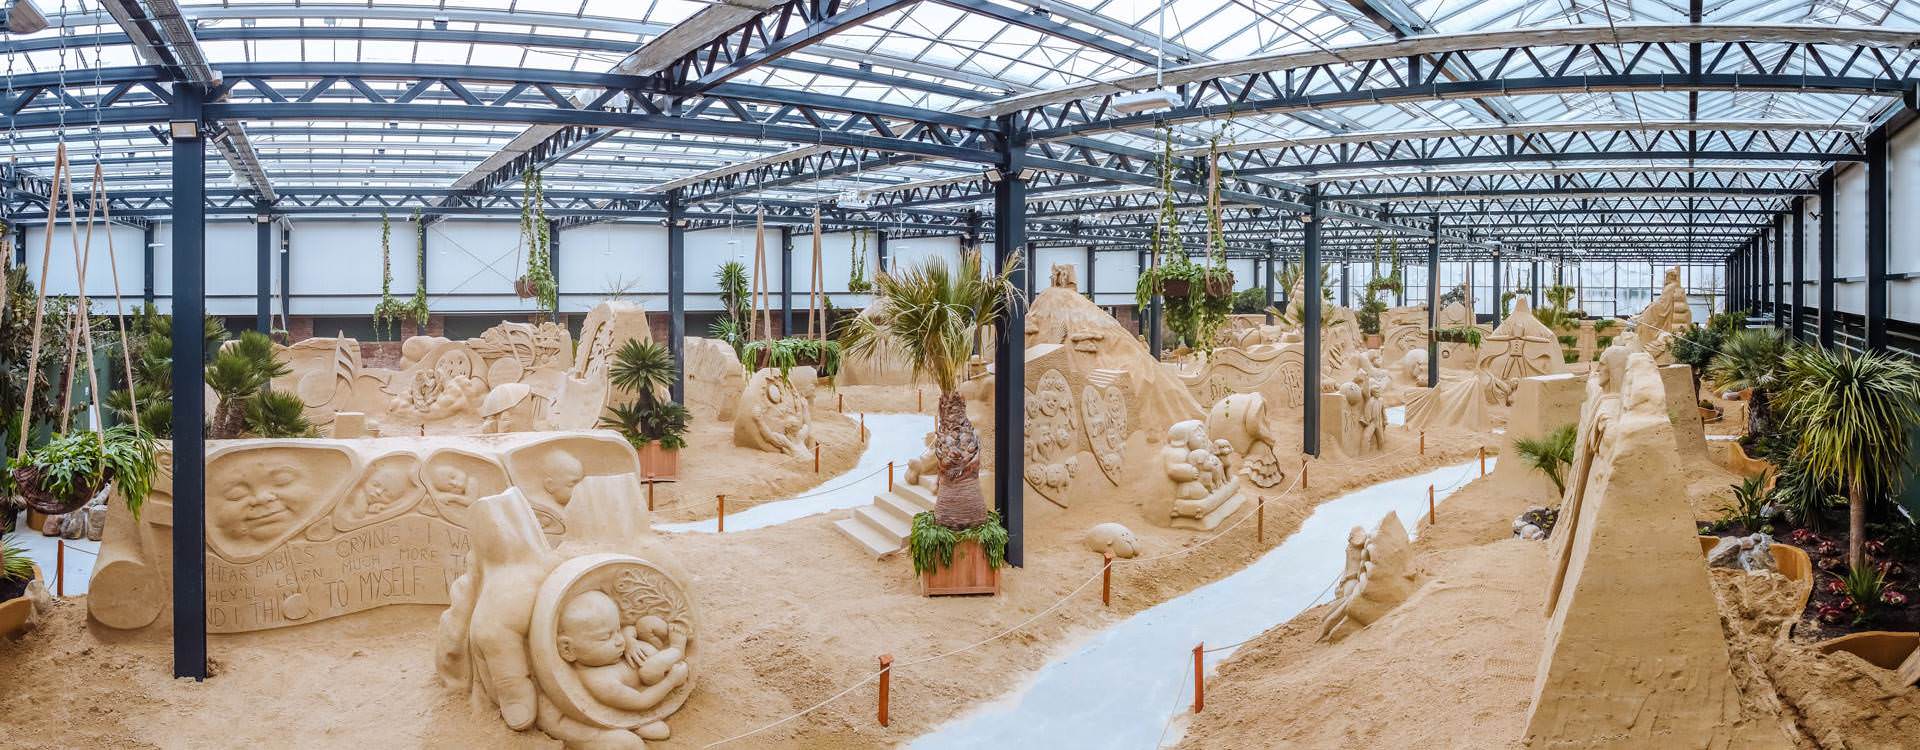 Sandskulpturen - Blick in die Ausstellungshalle